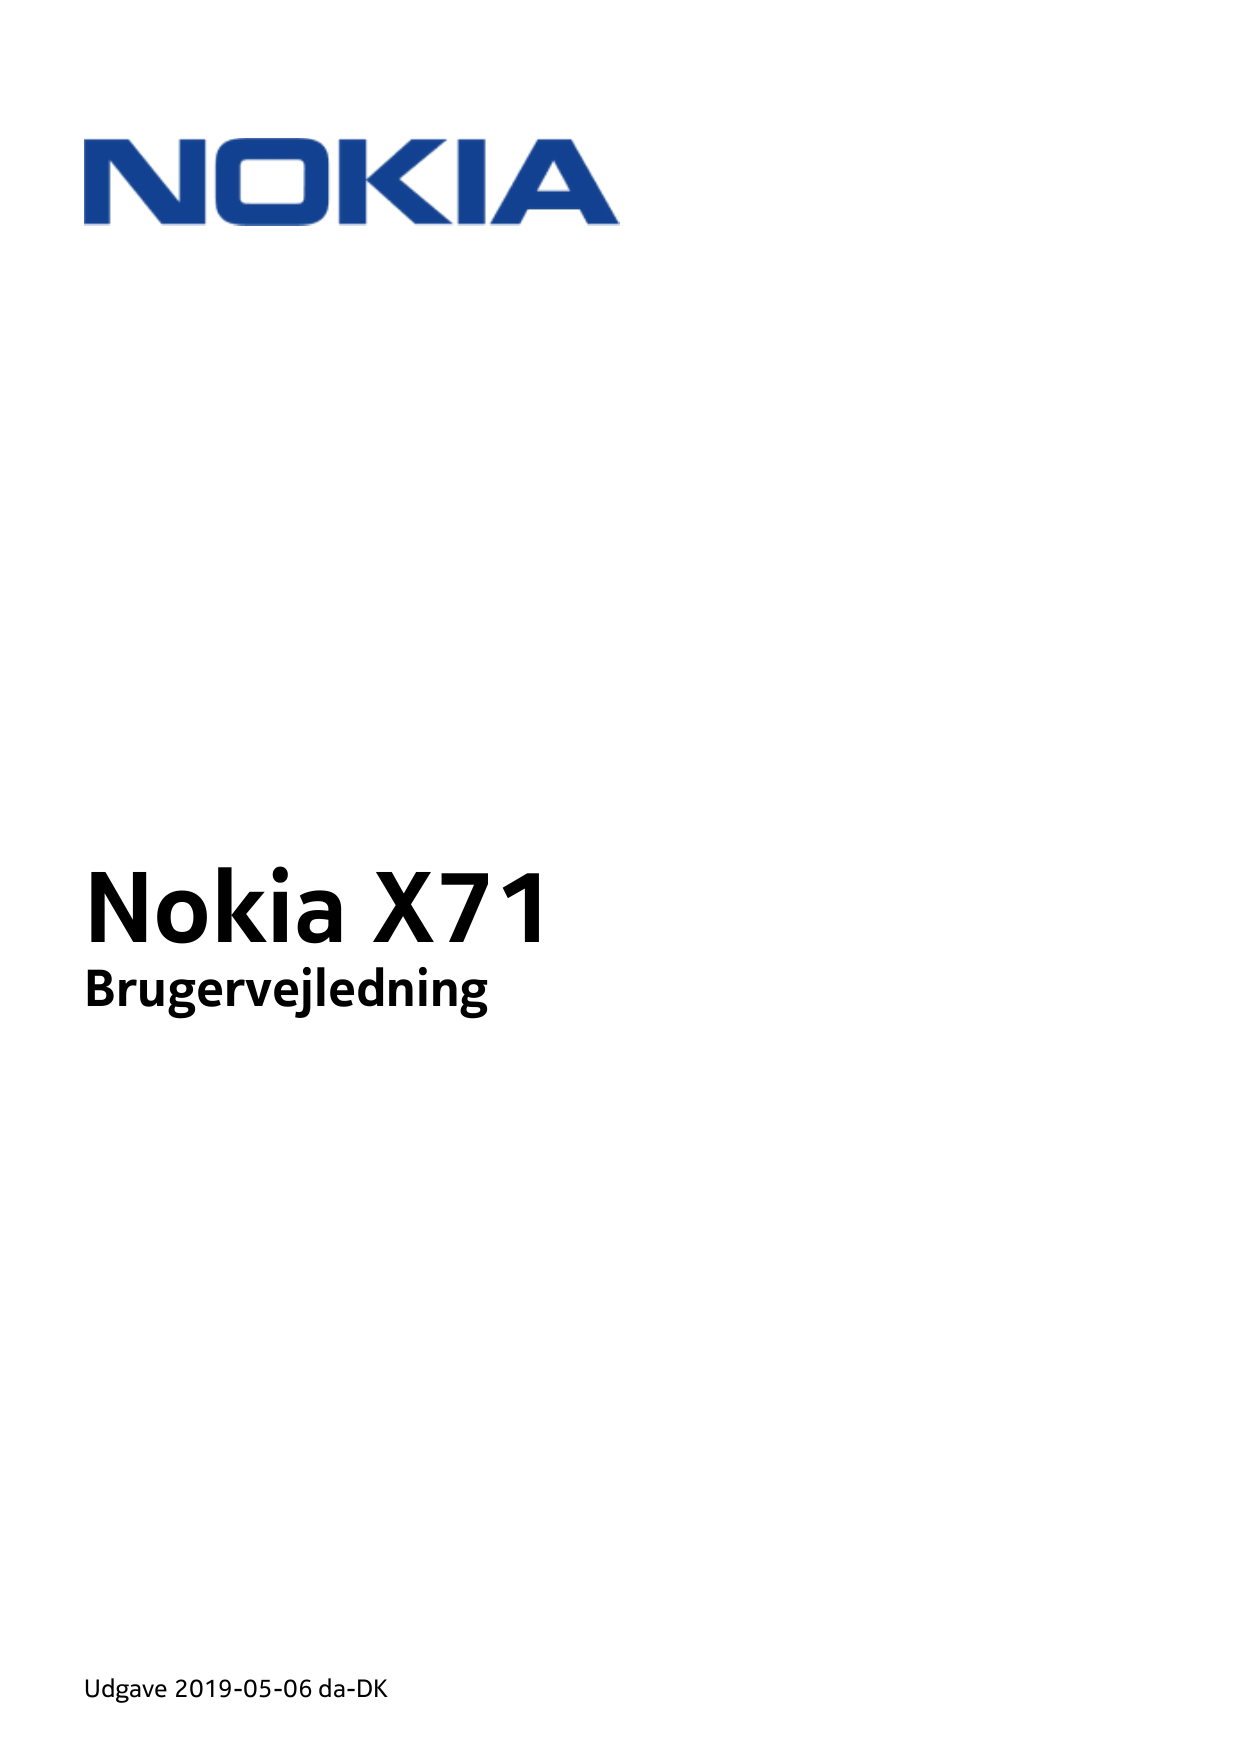 Nokia X71BrugervejledningUdgave 2019-05-06 da-DK